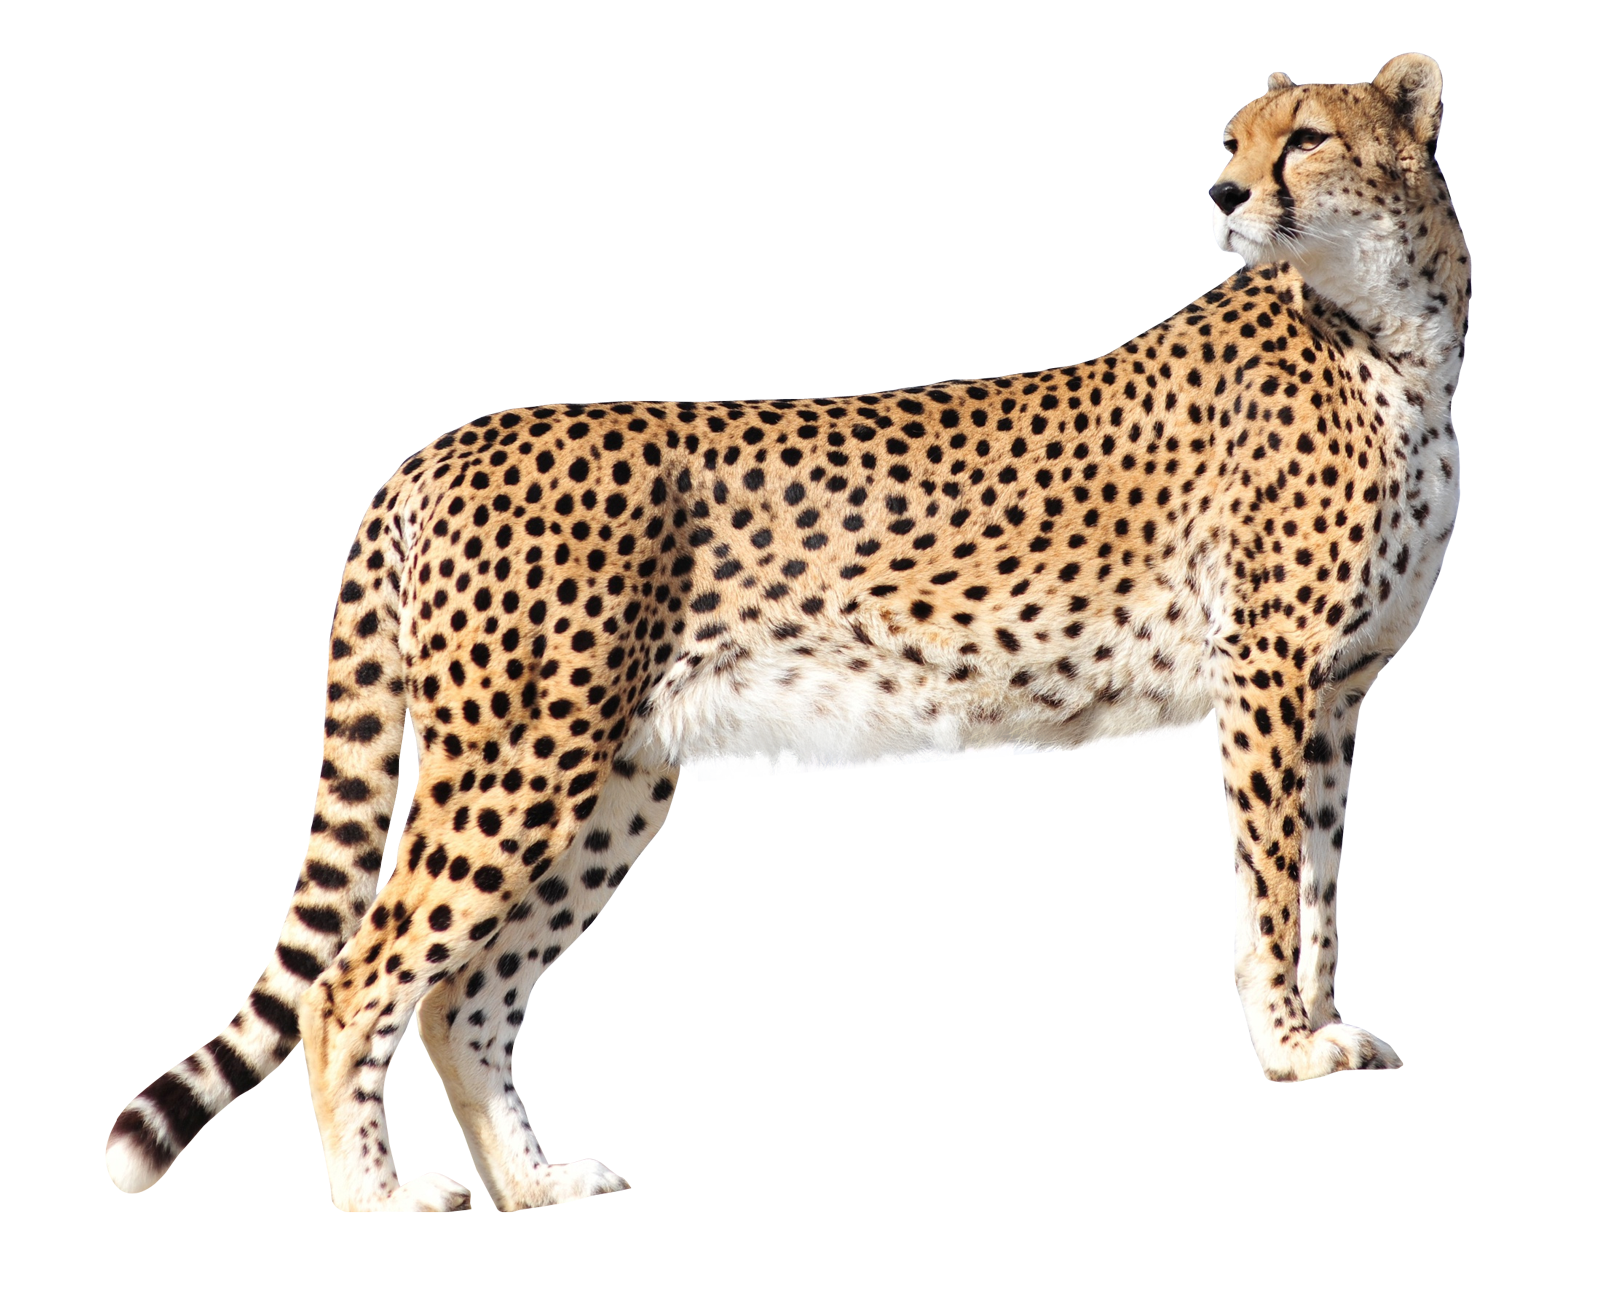 PNG File Name: Cheetah PlusPn